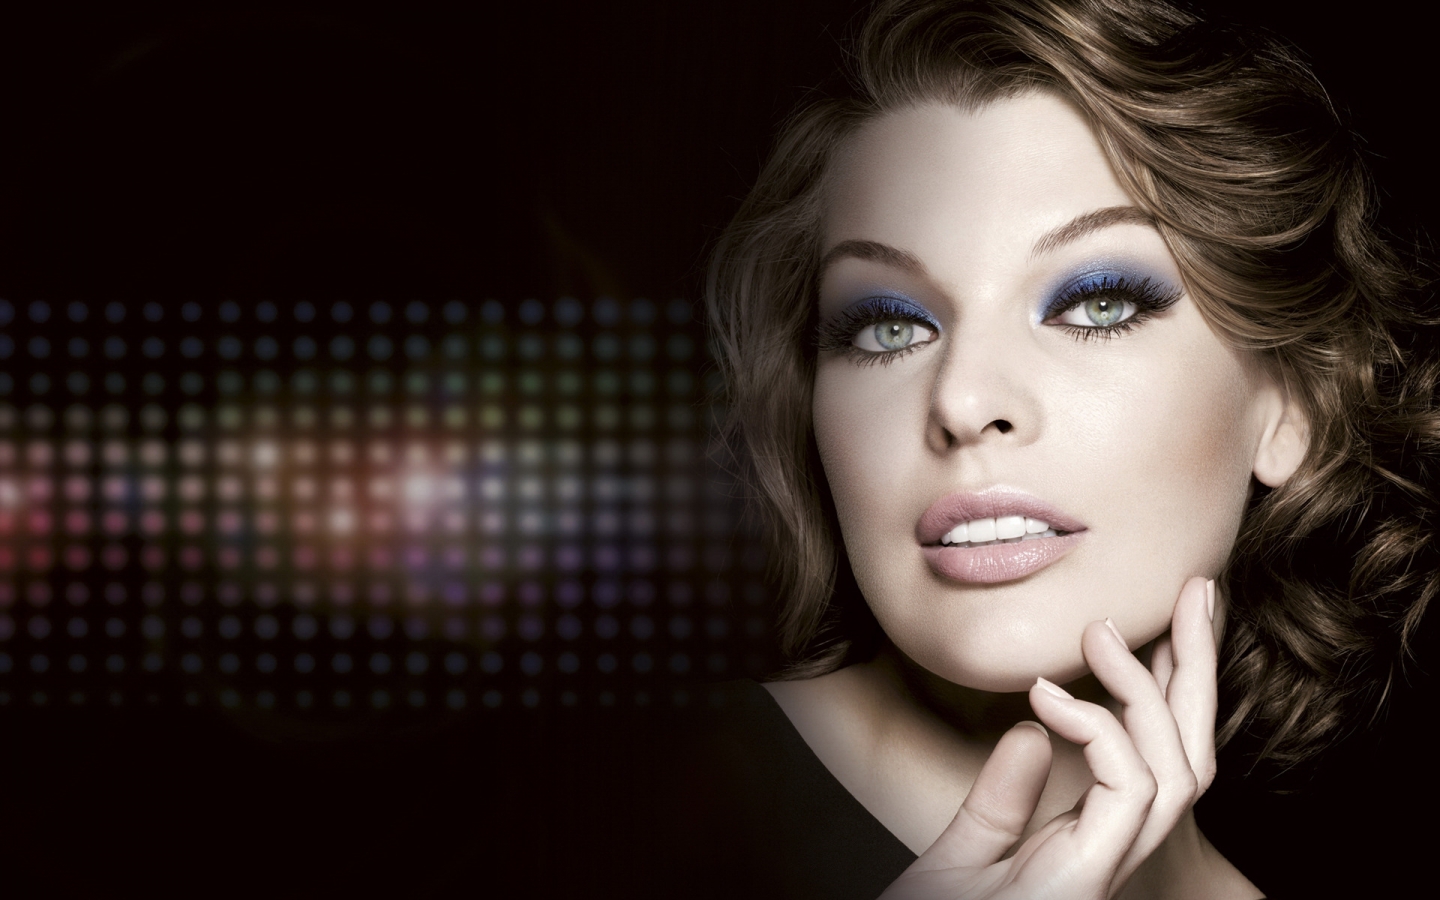 Milla Jovovich Beautiful for 1440 x 900 widescreen resolution